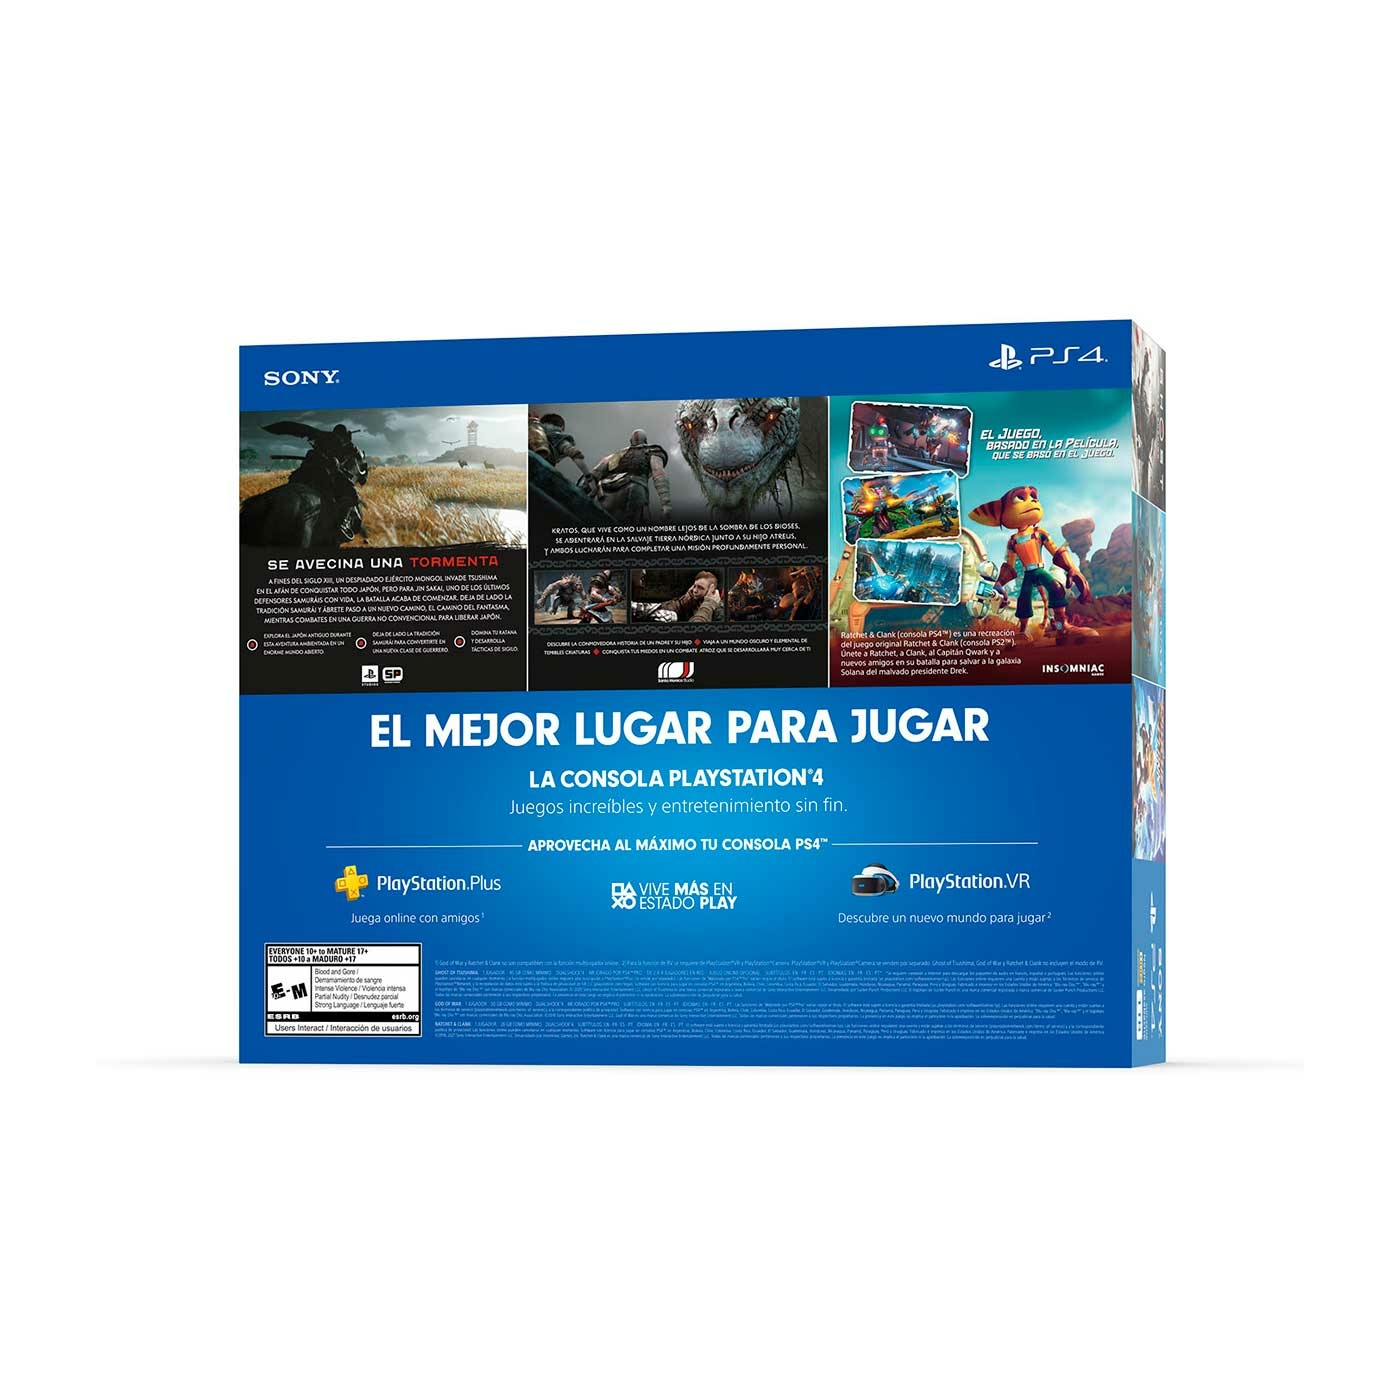 Consola PS4 Megapack 18 1 Tera + 1 Control Inalámbrico + 3 Juegos + Suscripción 3 Meses PlayStation Plus